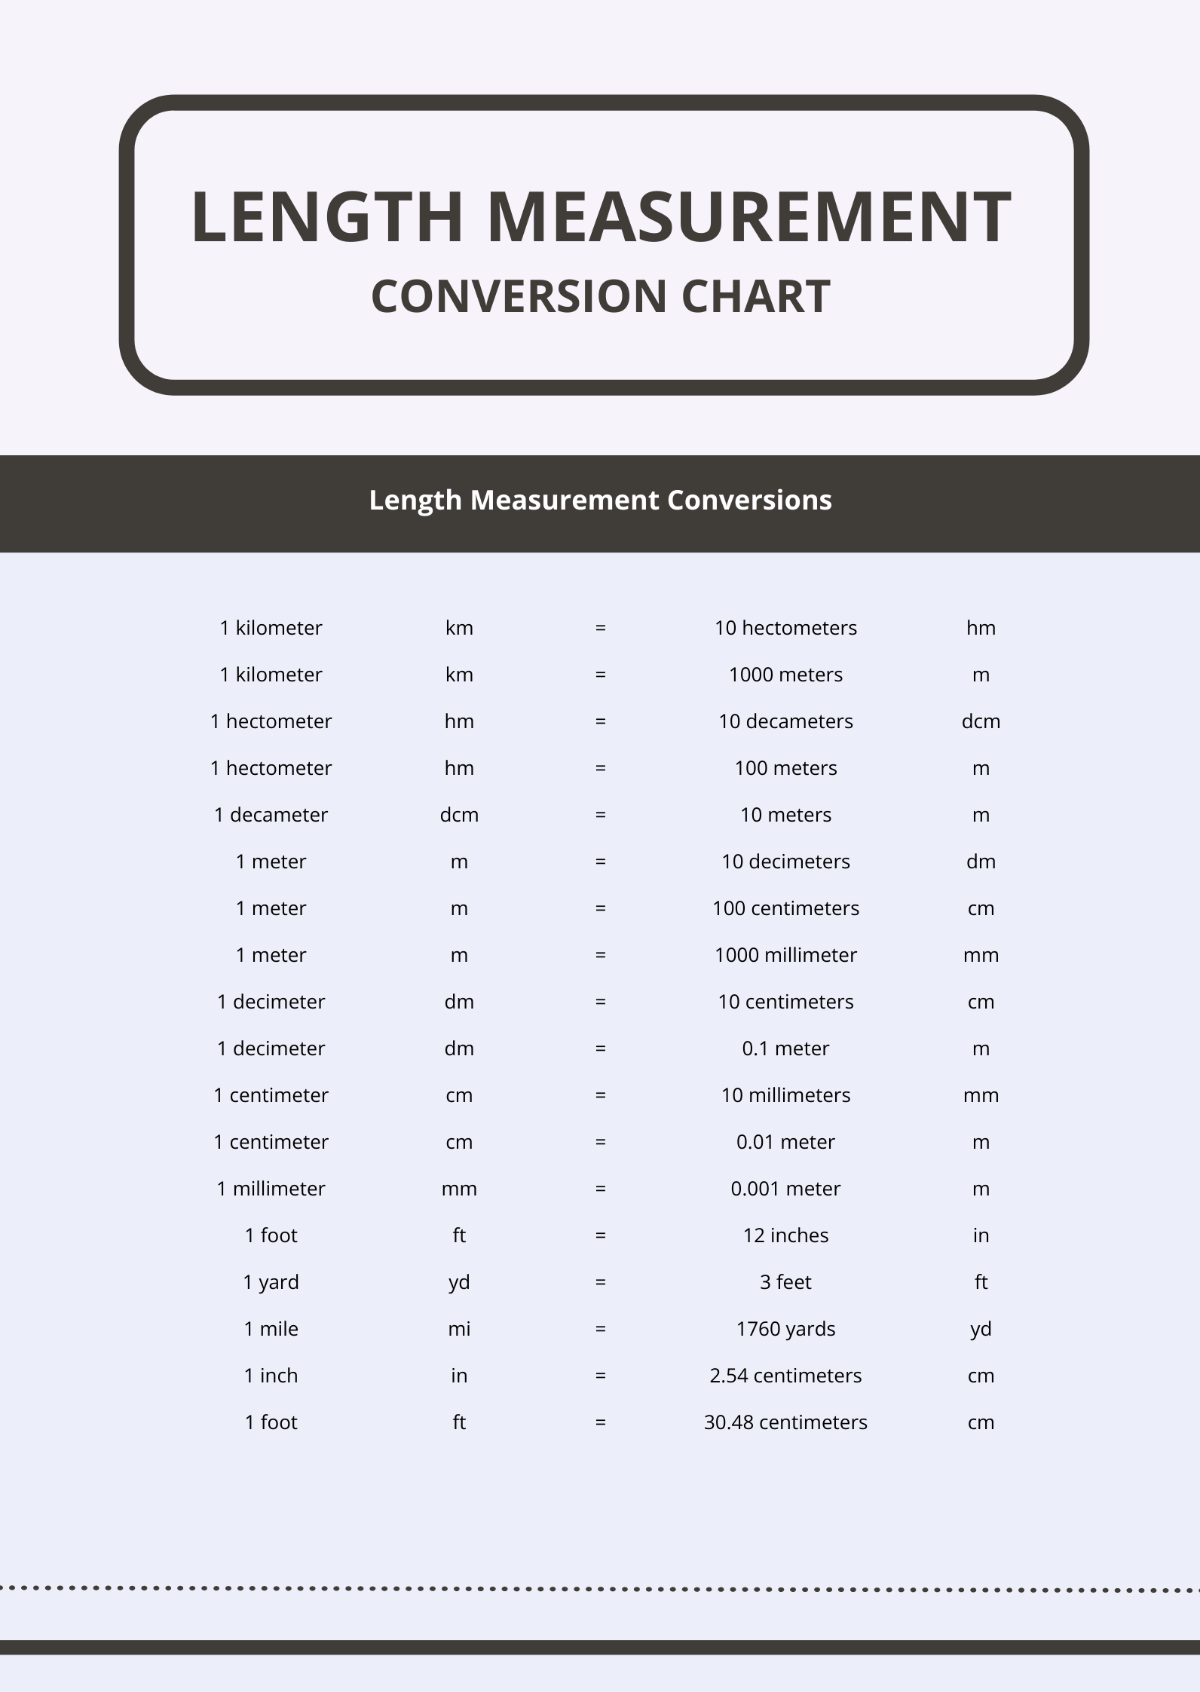 Length Measurement Conversion Chart